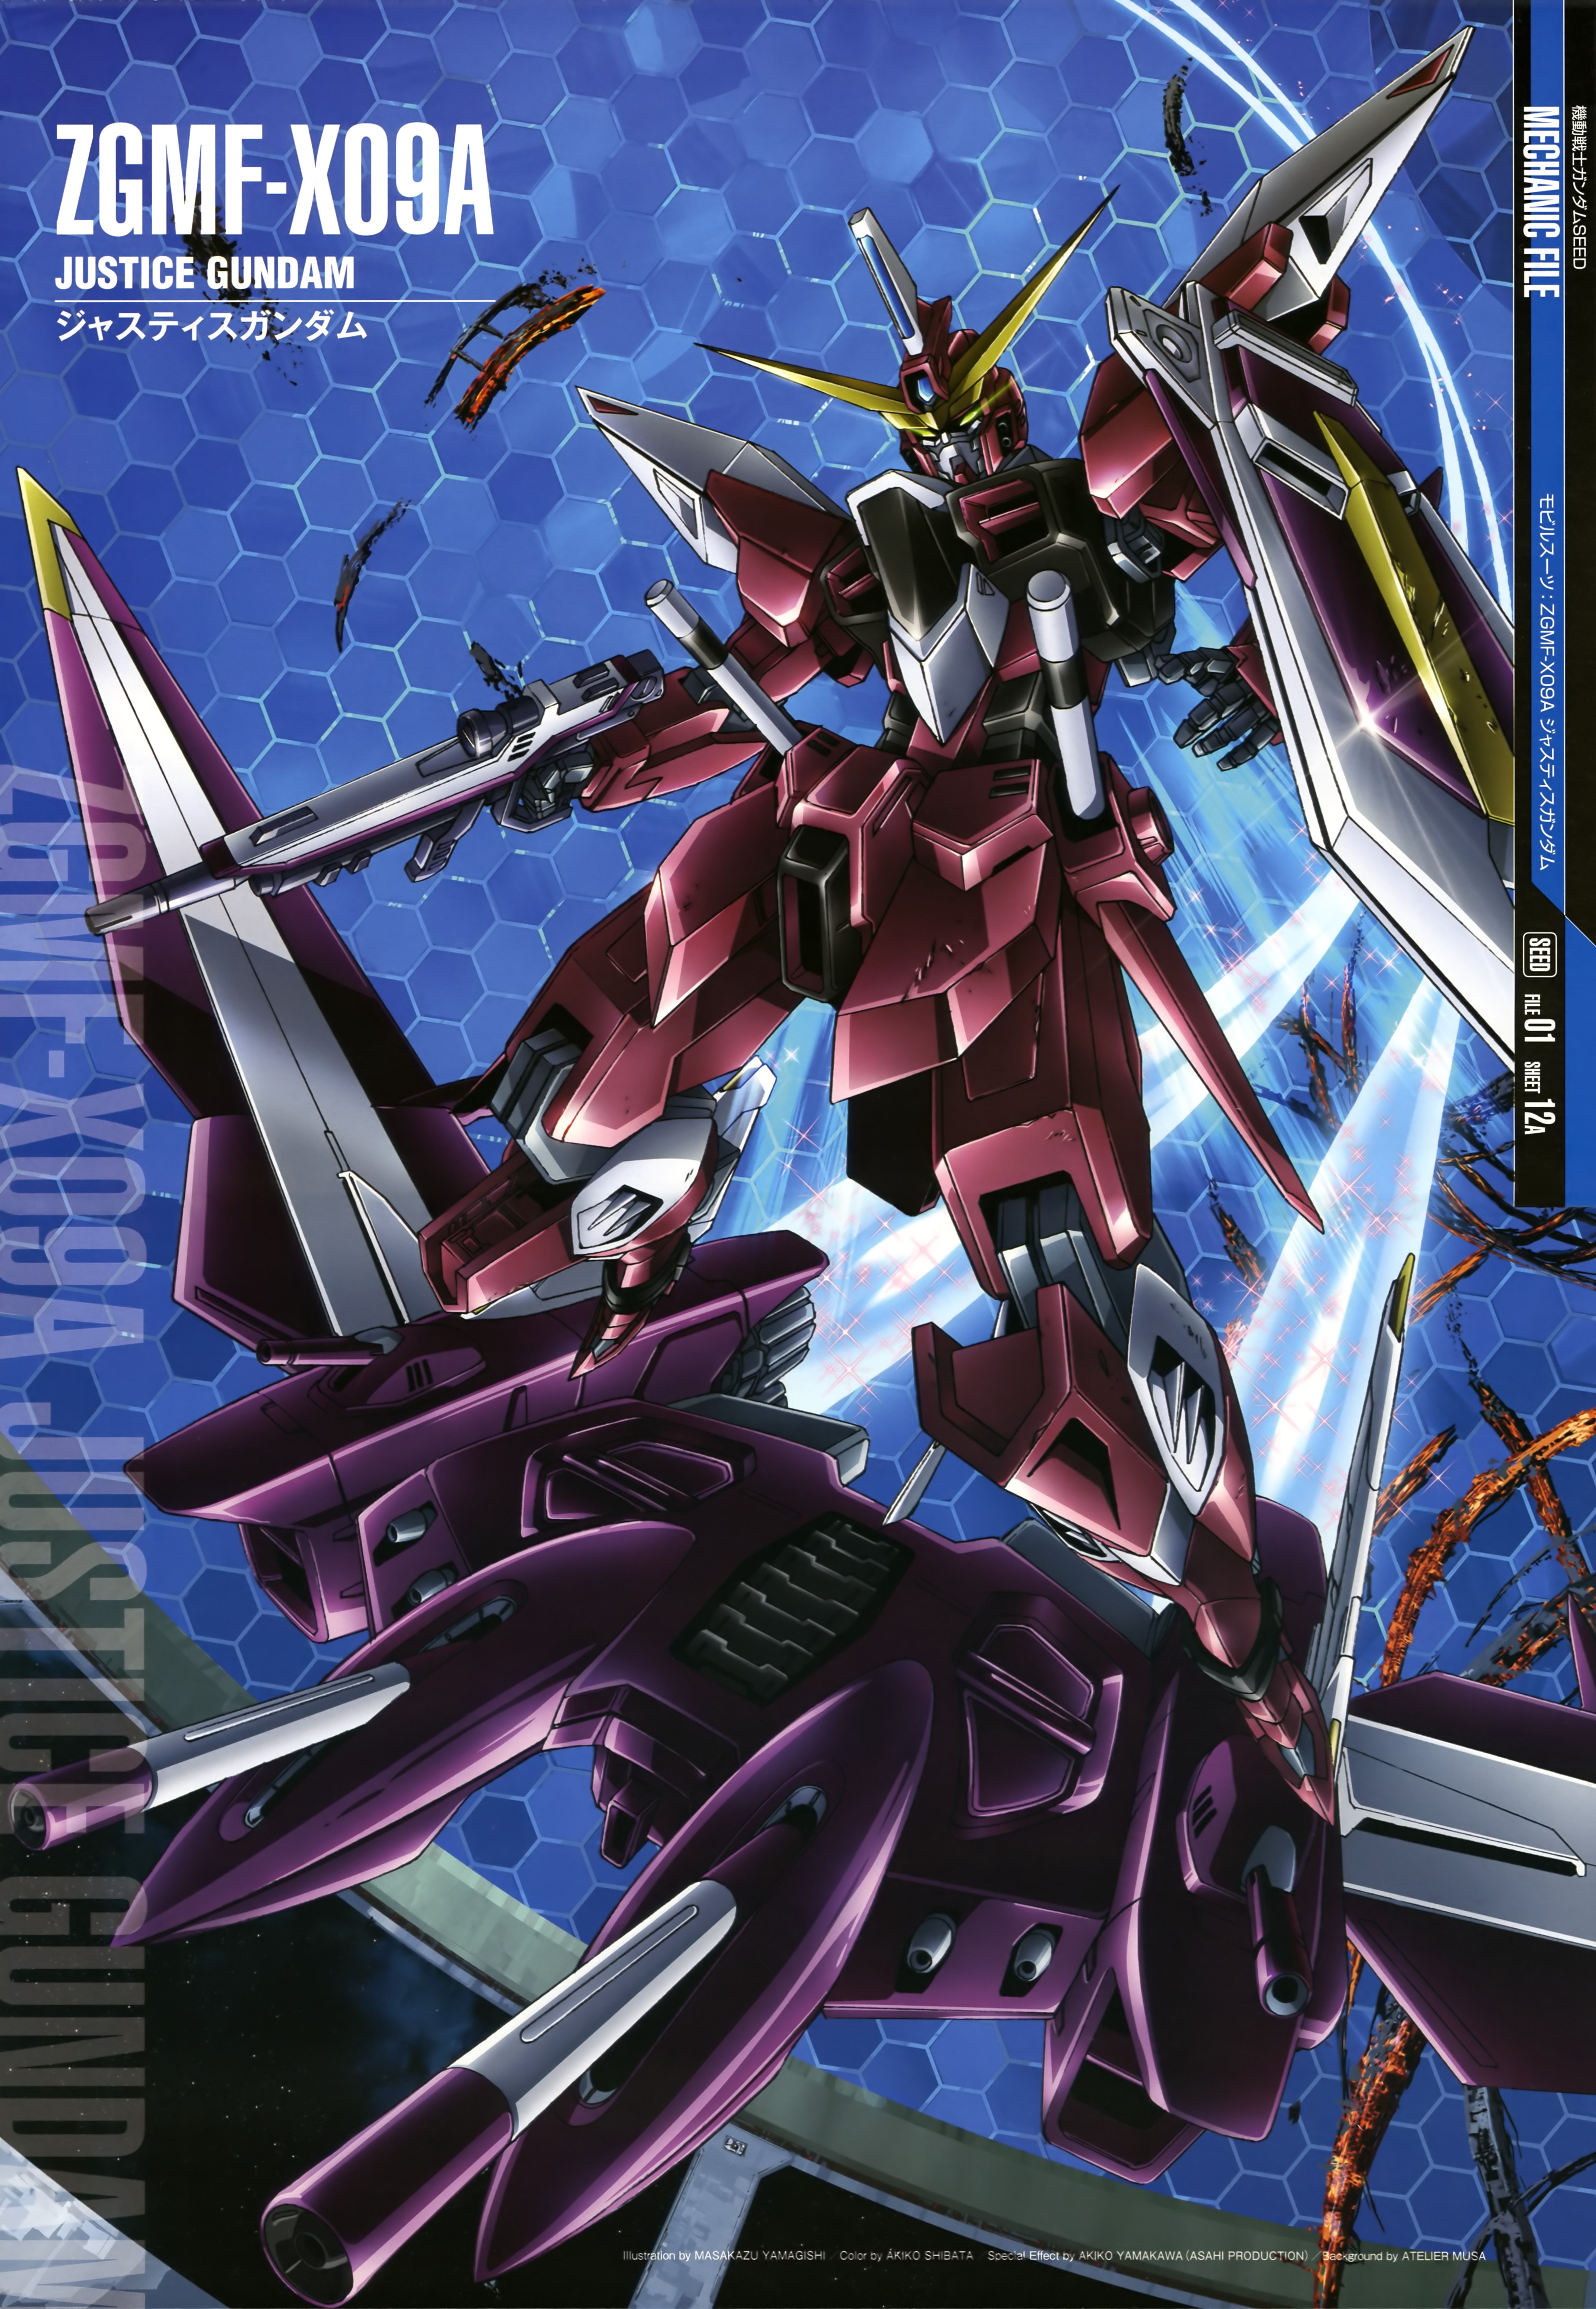 Justice Gundam Mobile Suit Gundam SEED Anime Mech Gundam Super Robot Wars Artwork Digital Art Offici 3932x5687